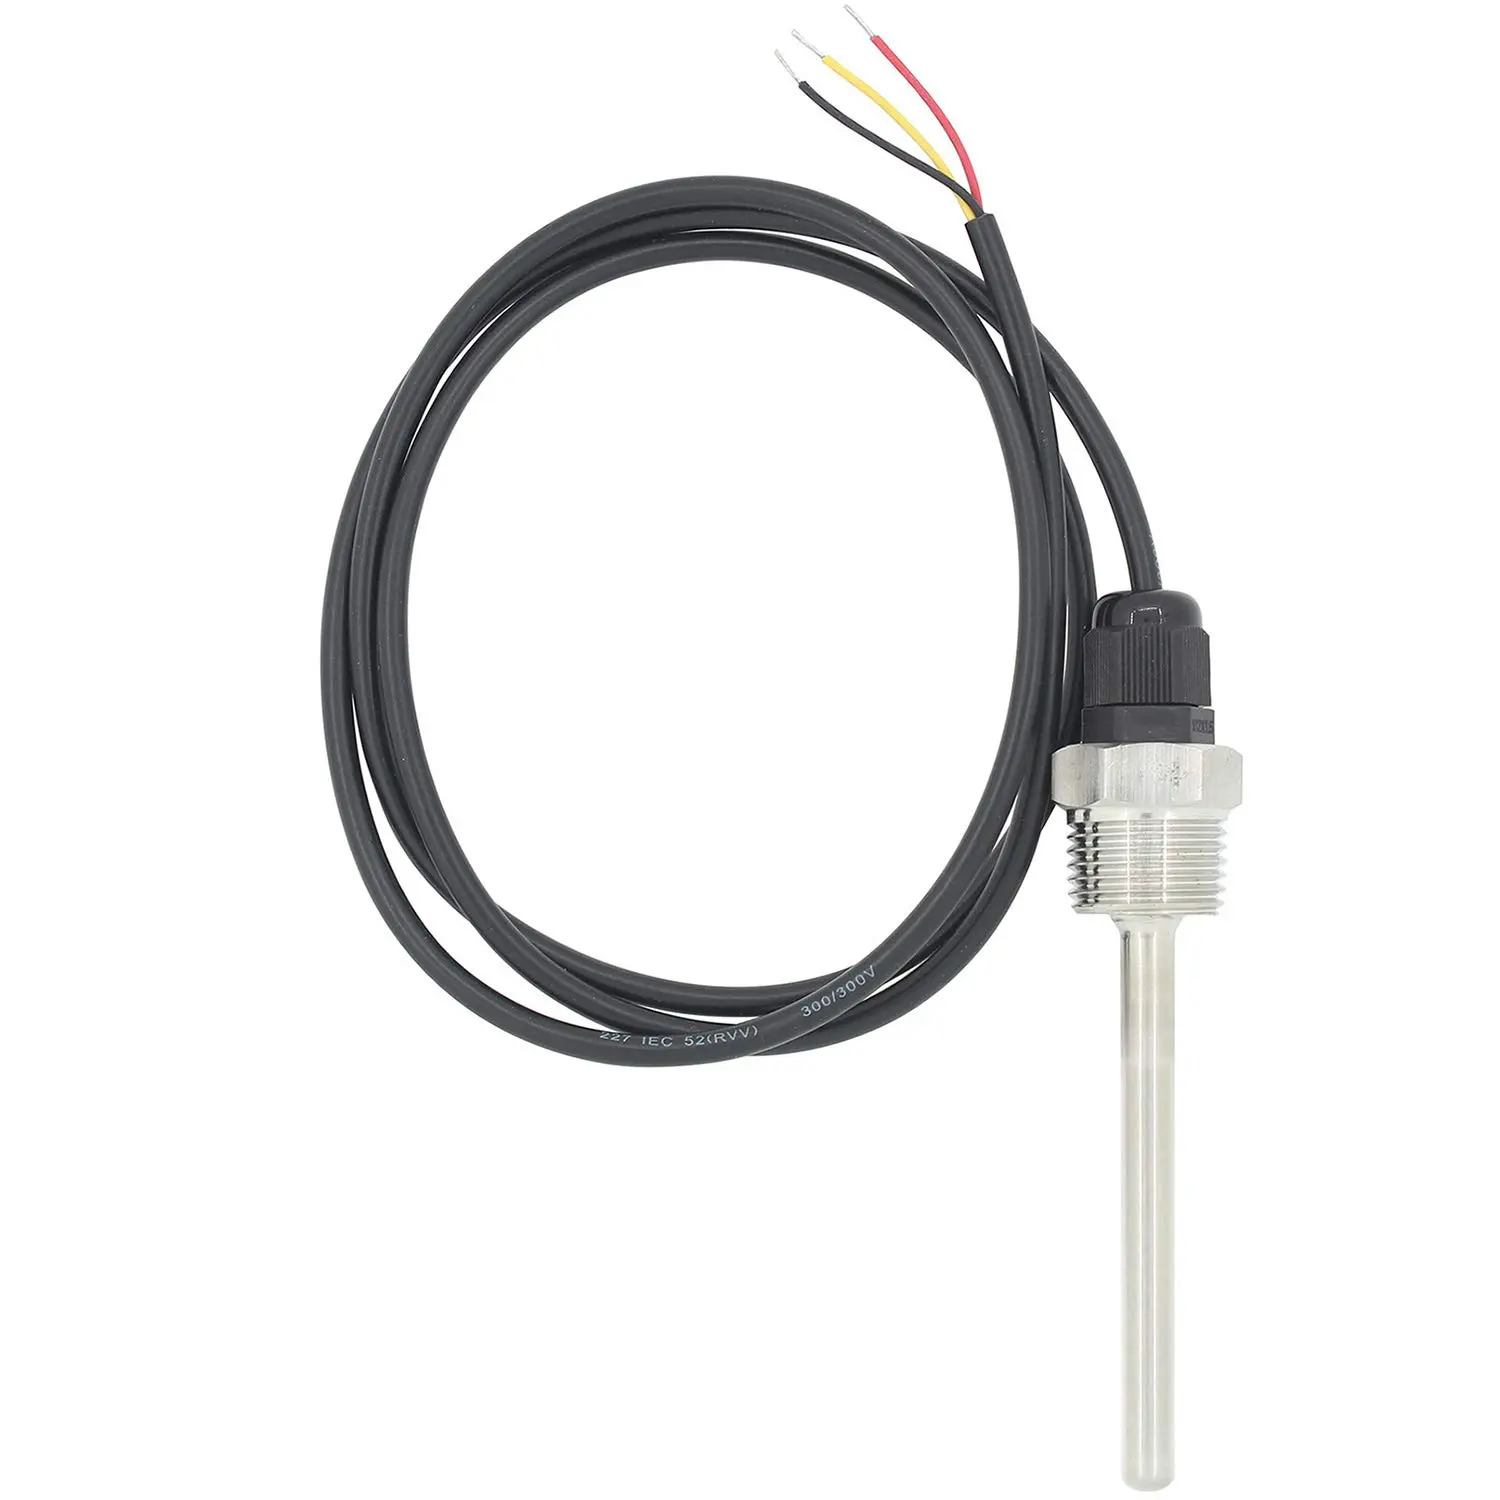 Pt100 Temperature Sensor Focusens 1/2" NPT Threads Pt100 Temperature Sensor Probe 3 Wires 2M Cable Pt1000 RTD With -50-300C